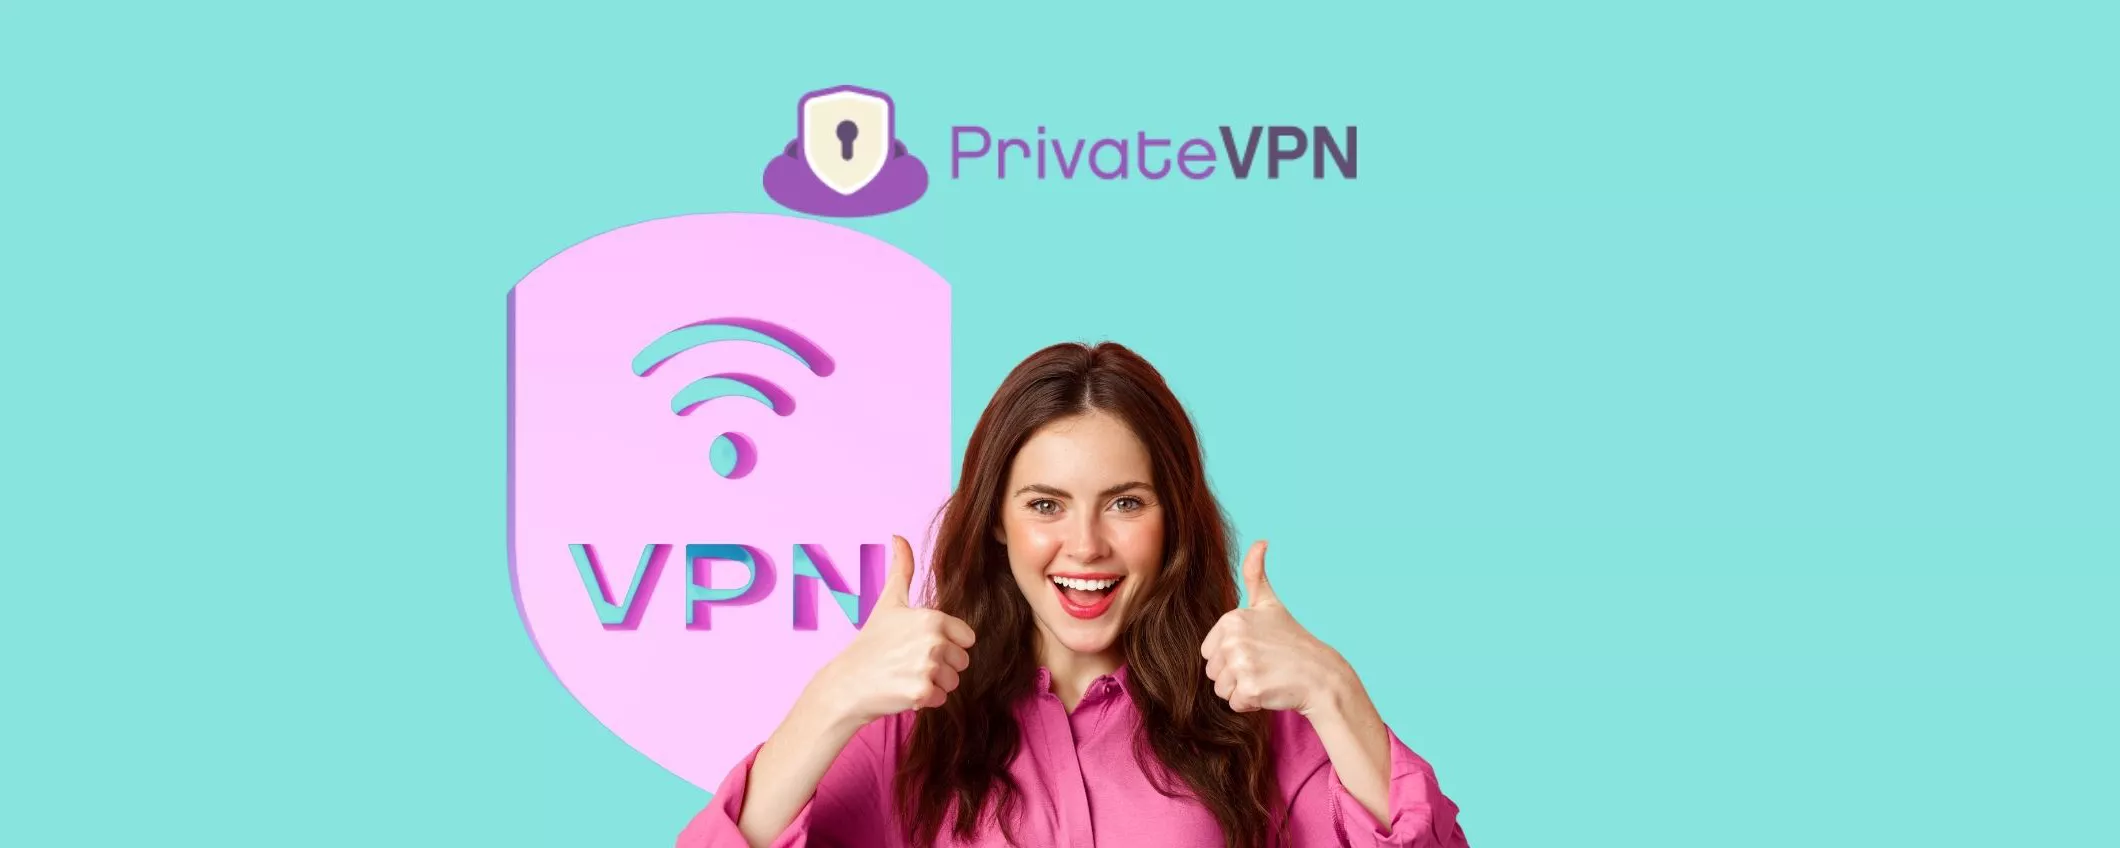 VPN a 2 euro al mese: PrivateVPN con lo sconto dell’85%